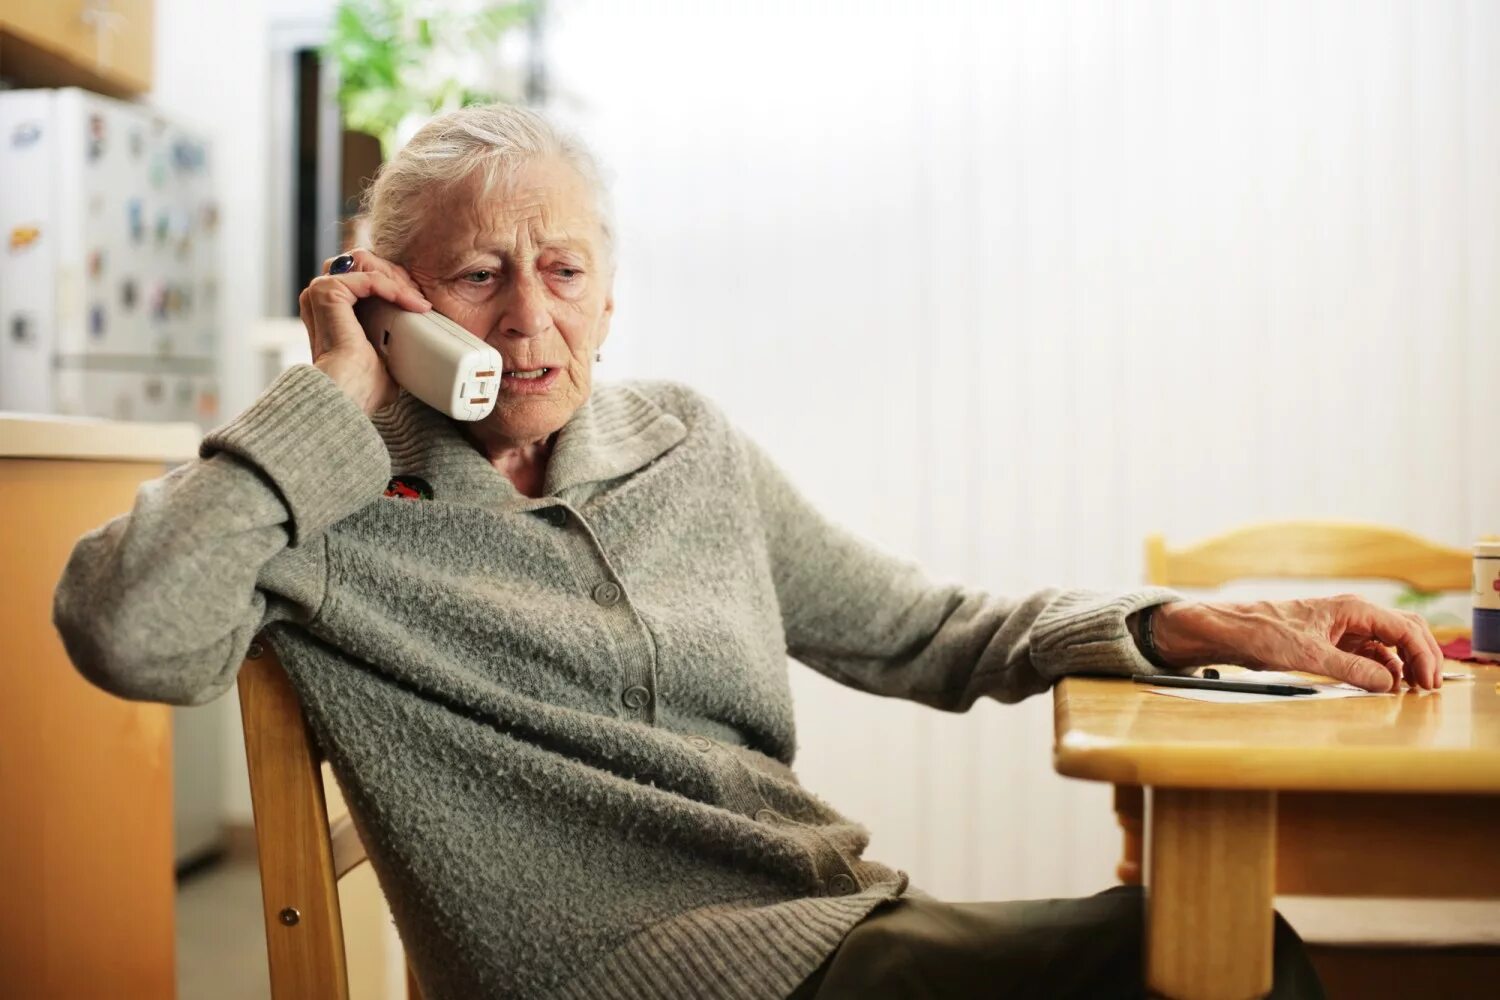 Пожилая женщина с телефоном. Пенсионер с телефоном в руке. Телефон для пожилых. Пожилая женщина с телефоном в руках.